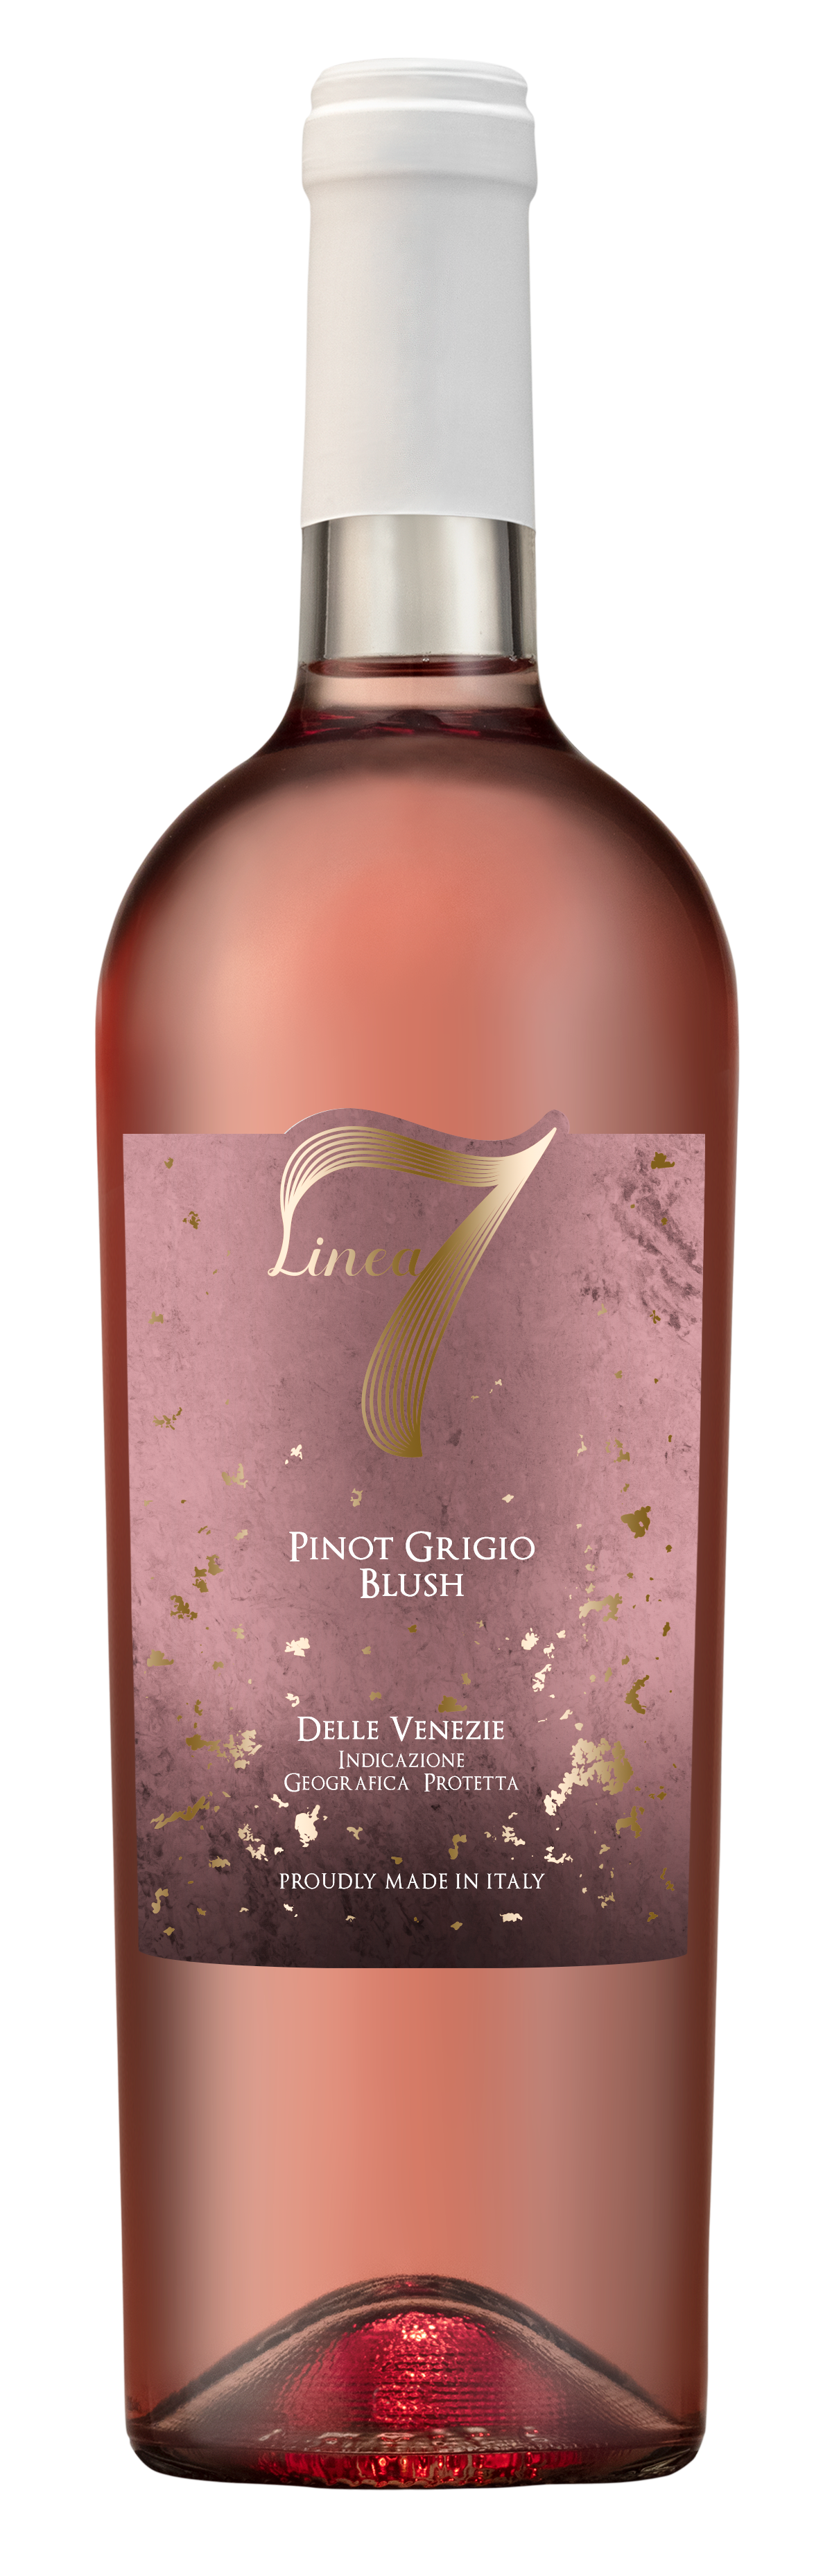 Pinot Grigio Lucido Blush Linea Sette 